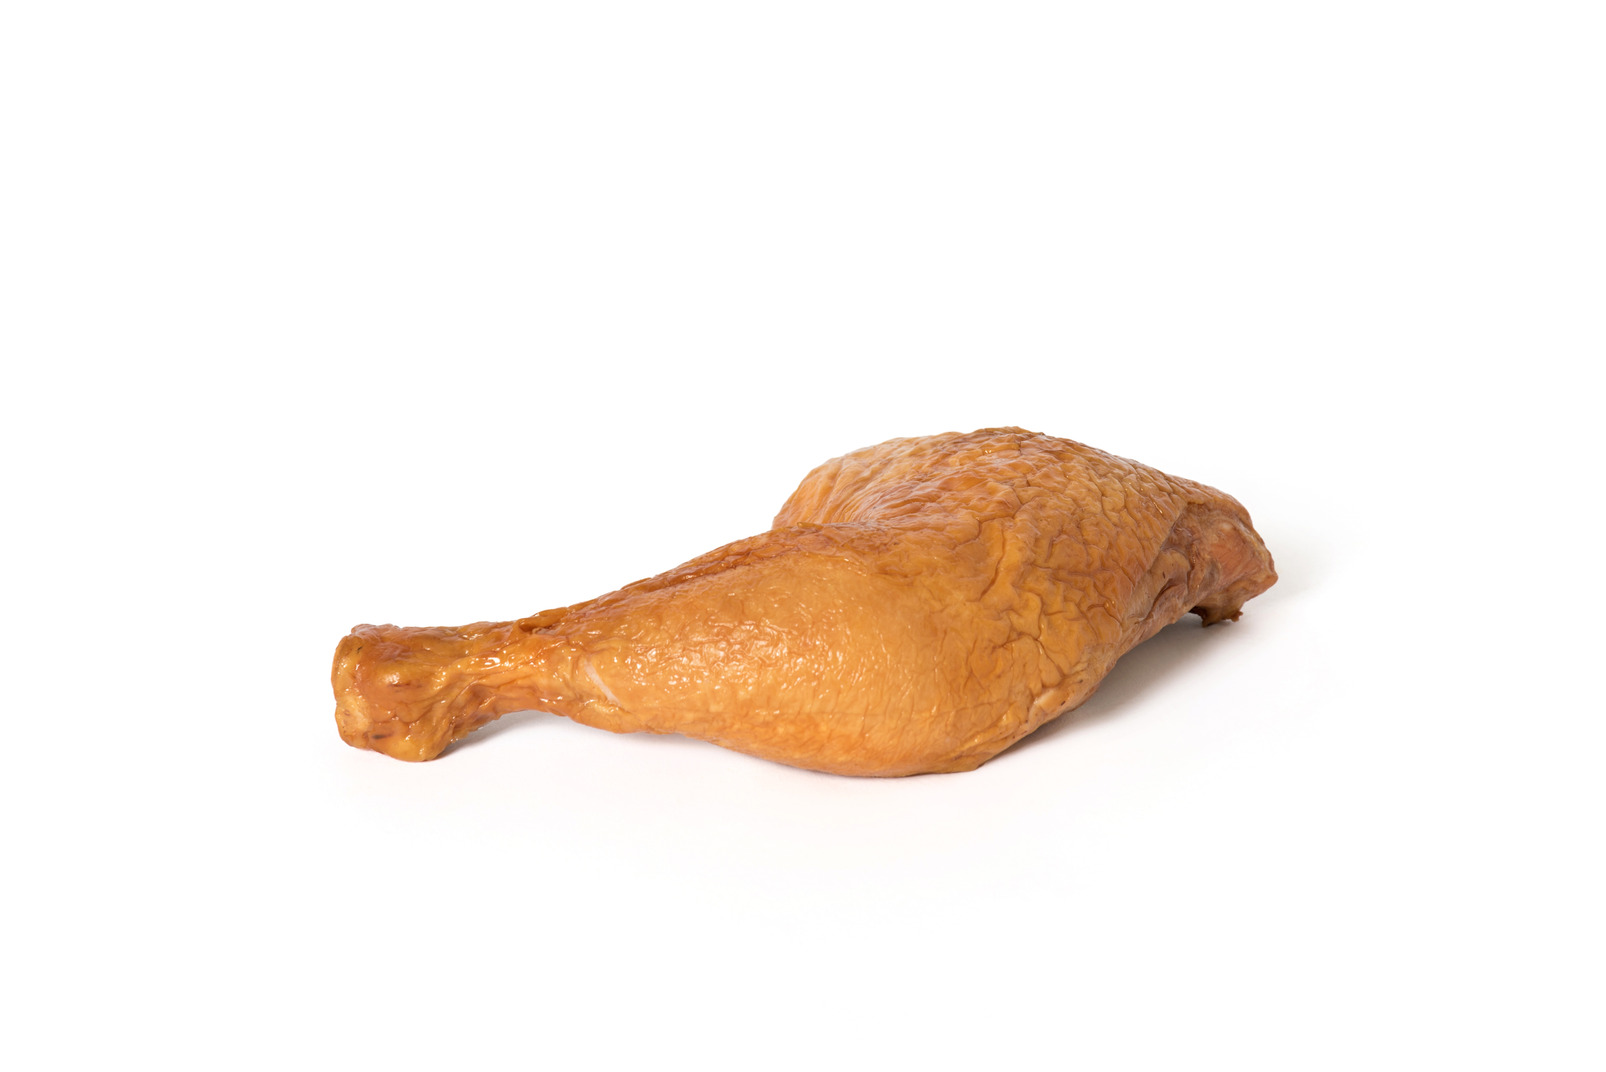 Fried chicken leg on white background